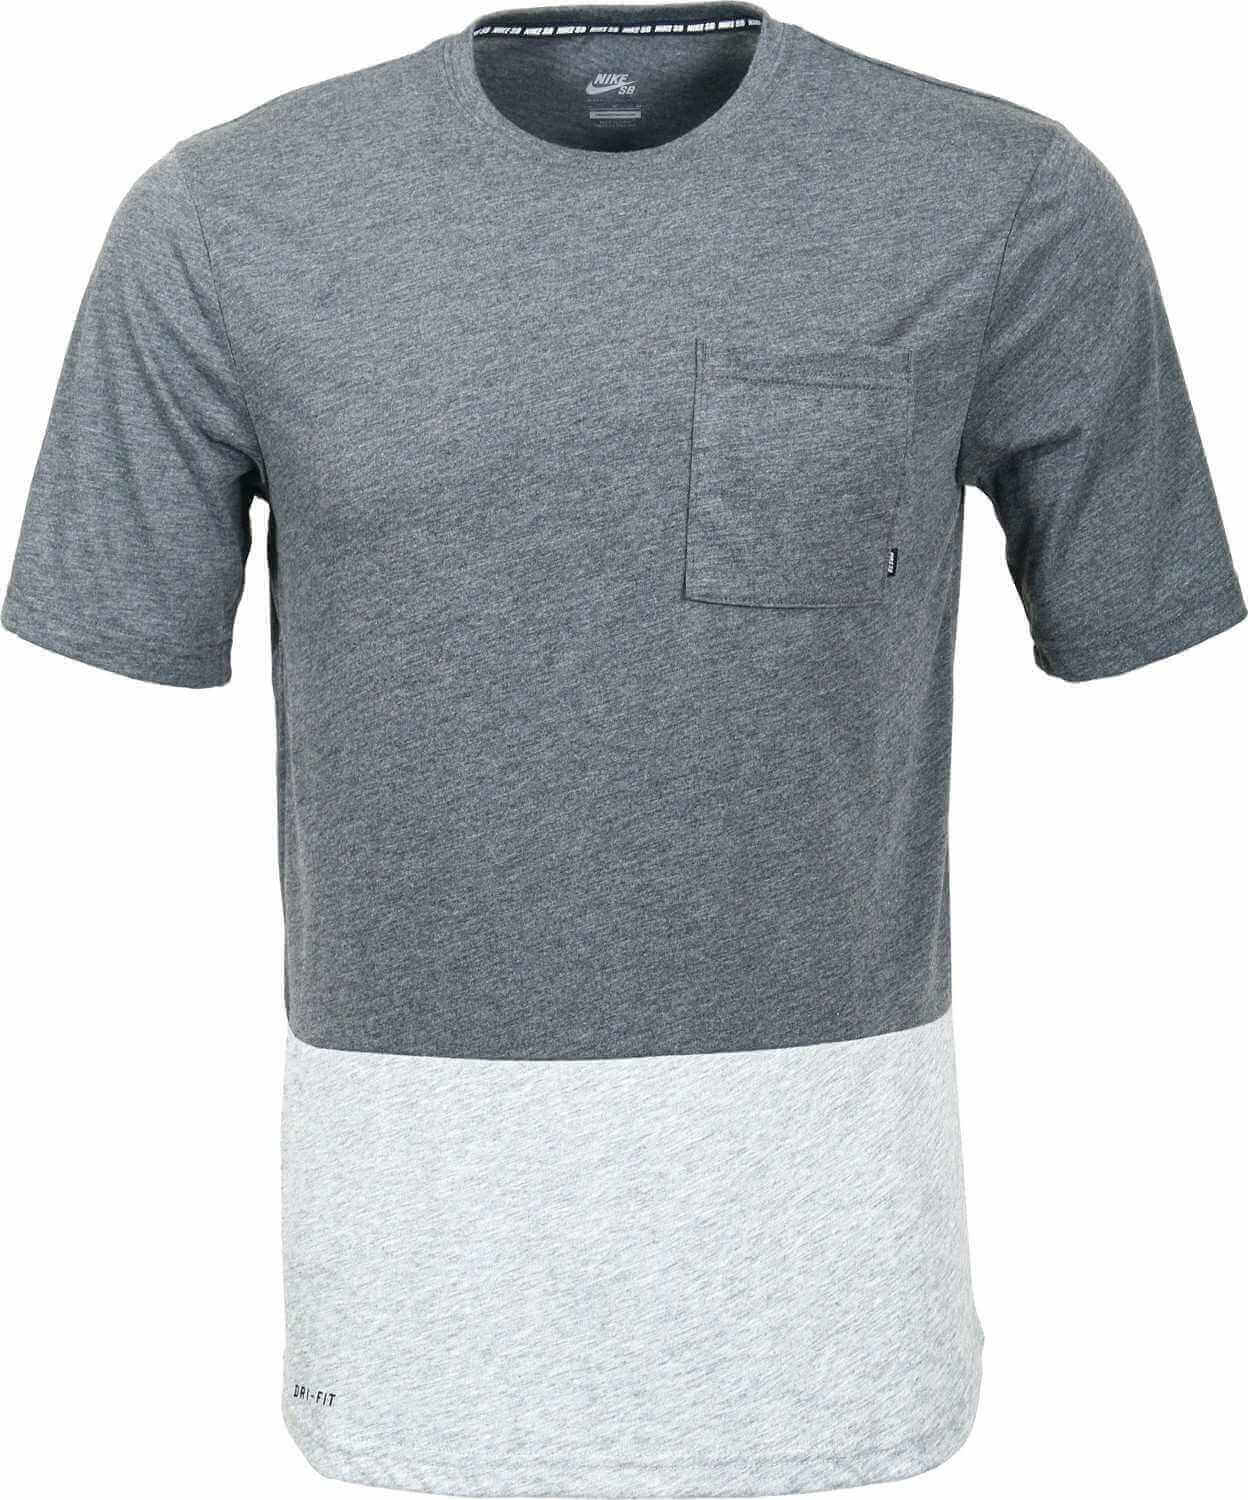 T-Shirt Nike SB: DRI-FIT Pocket Tee